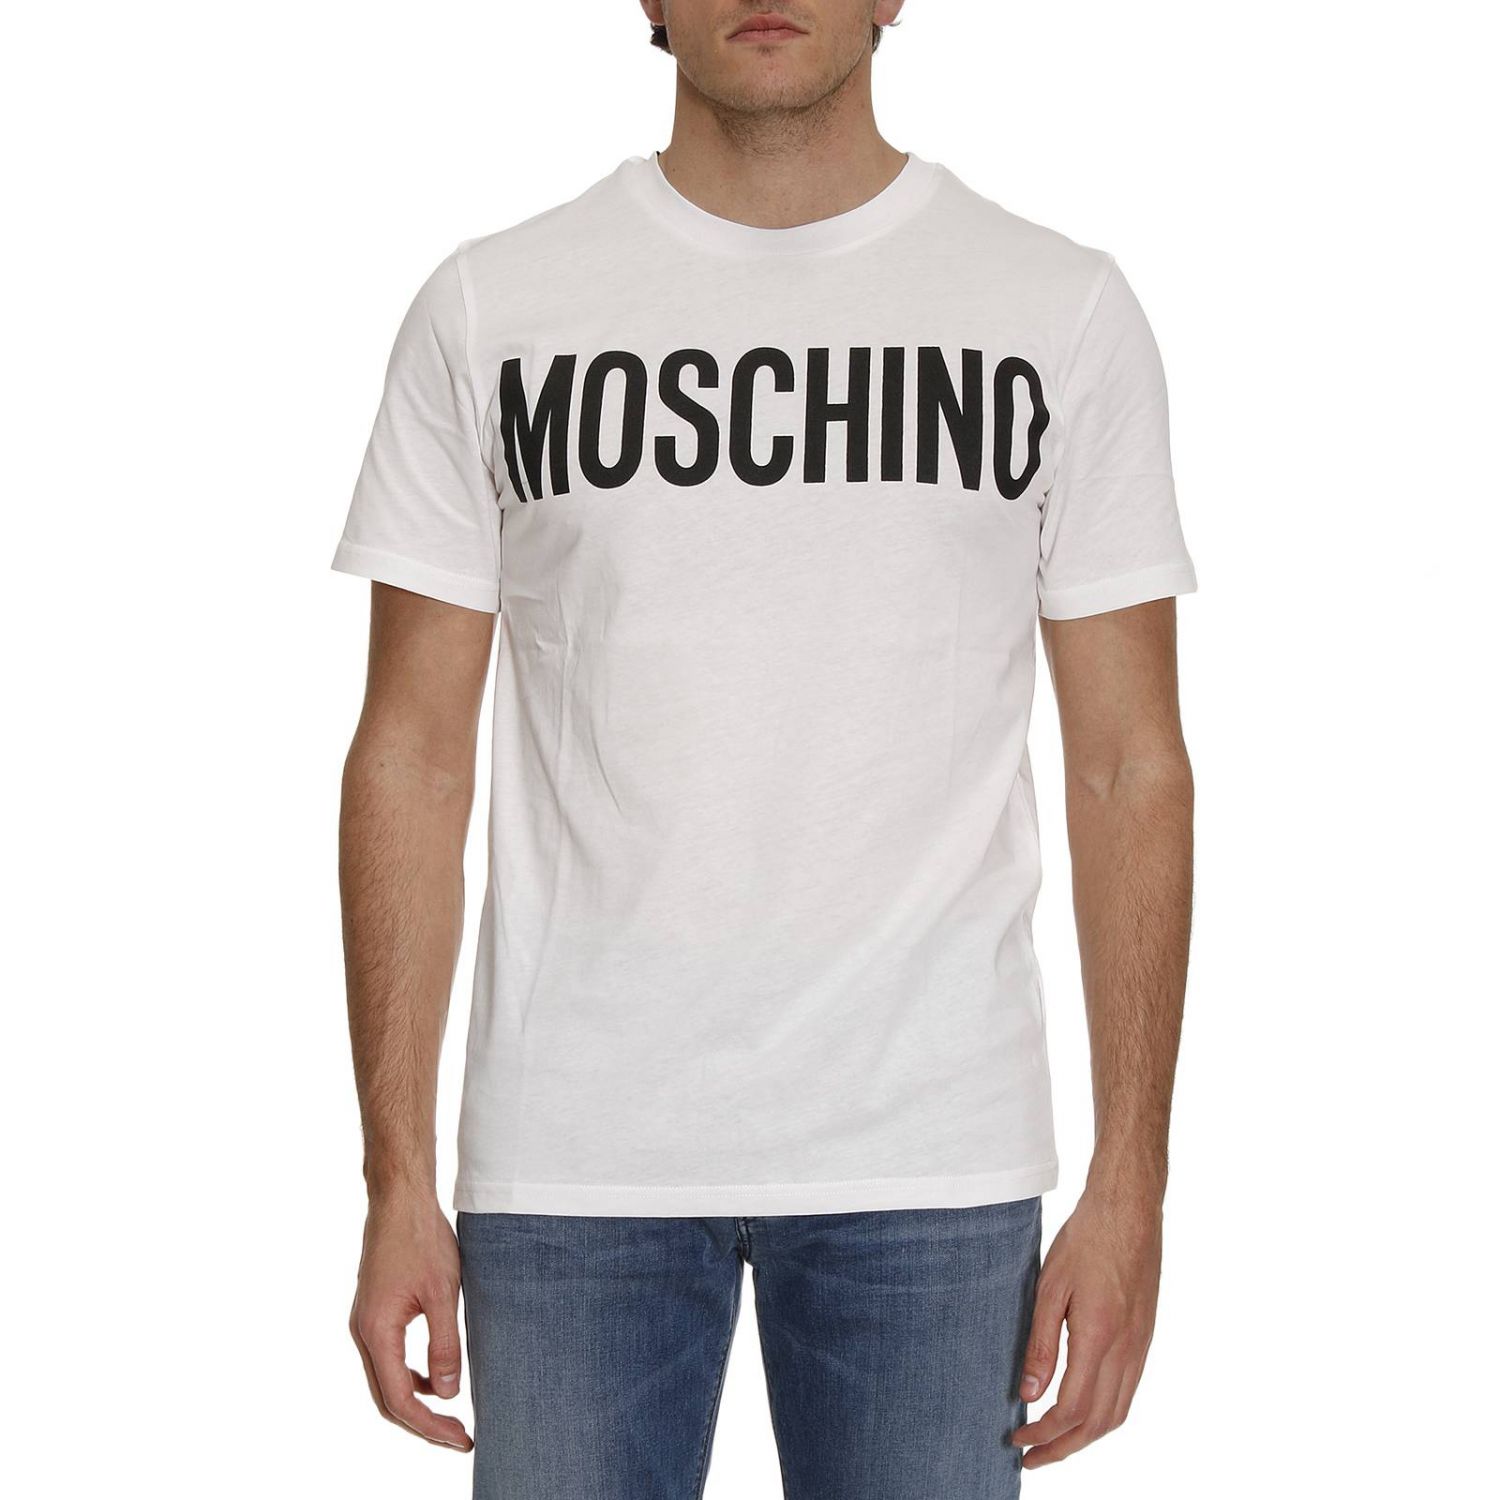 moschino t shirt men's